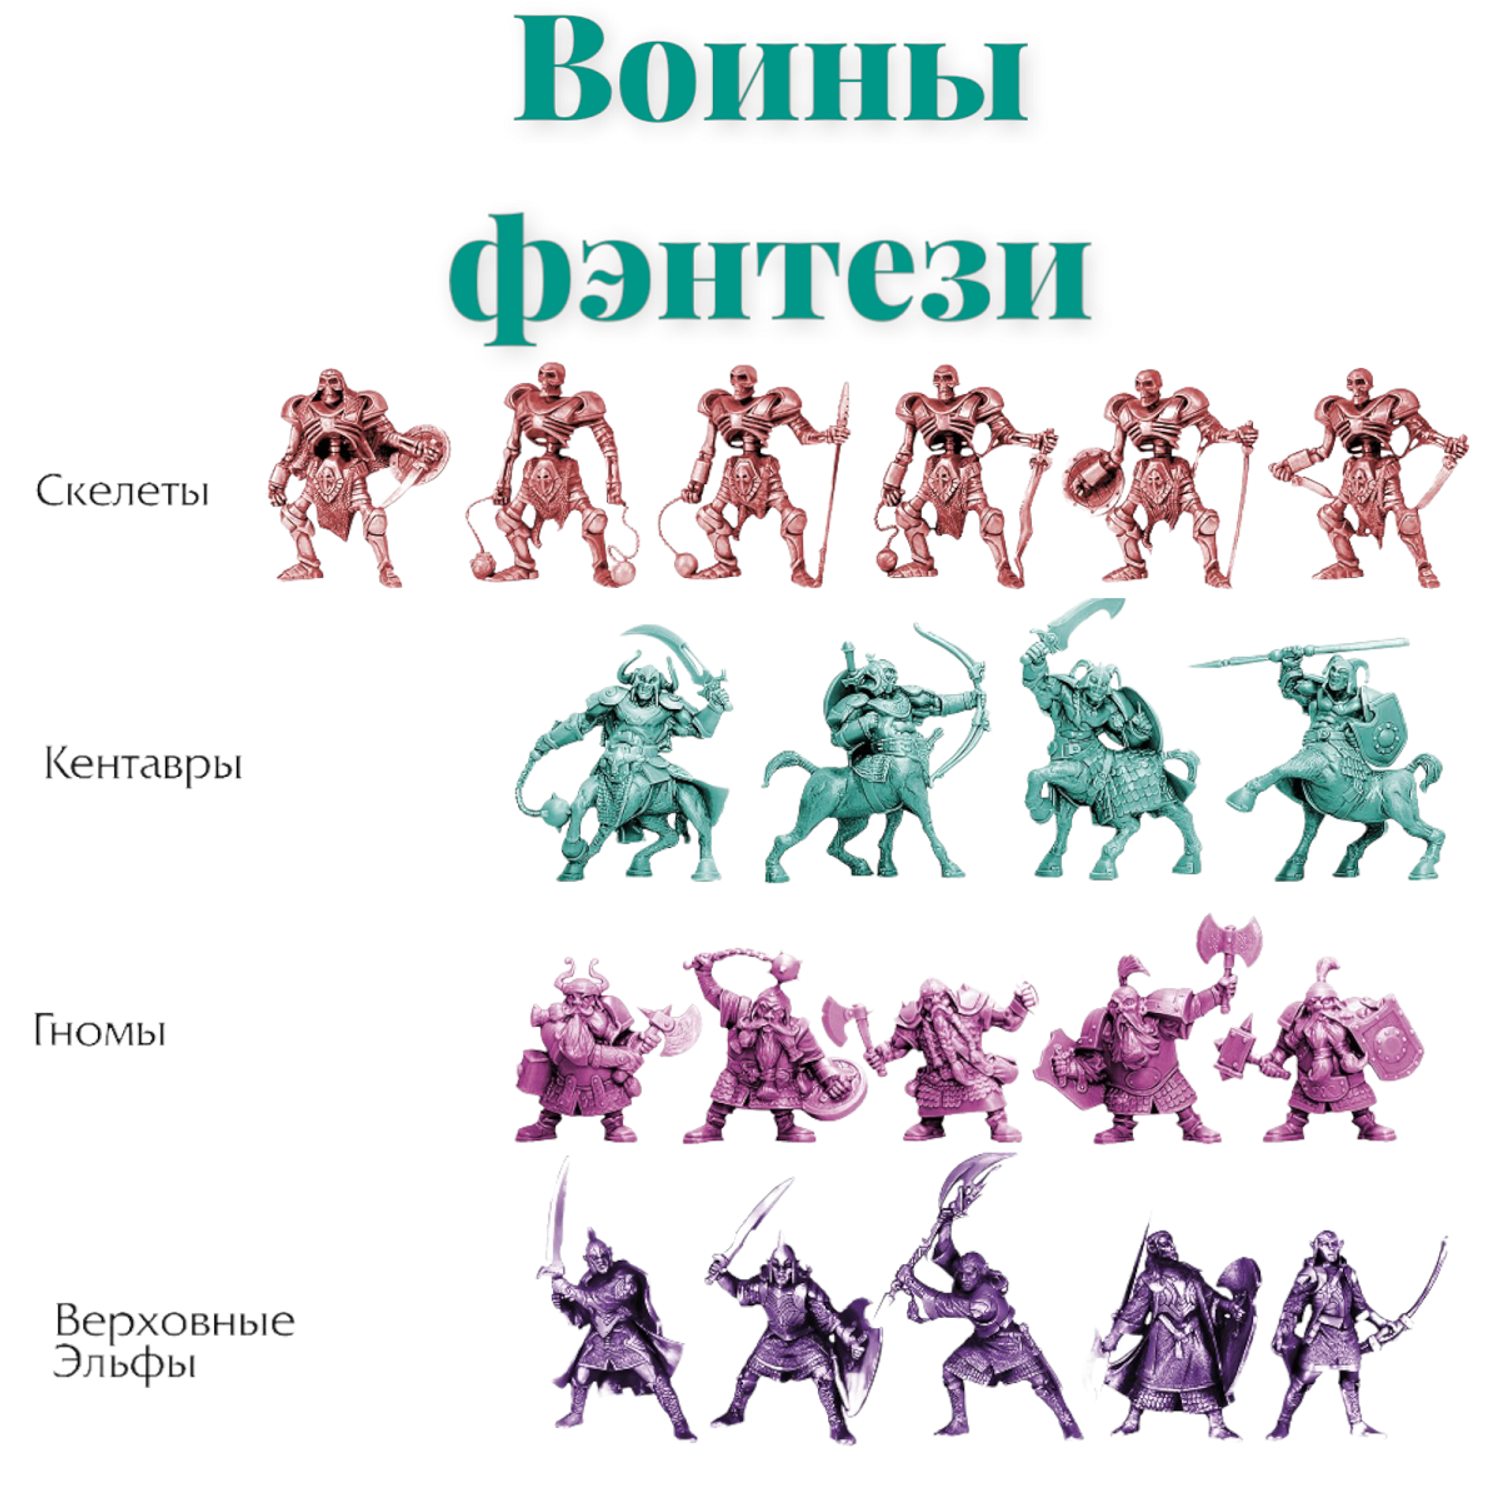 Игровой набор солдатиков Парам-пампам Воины фэнтези 8 видов армий - фото 2